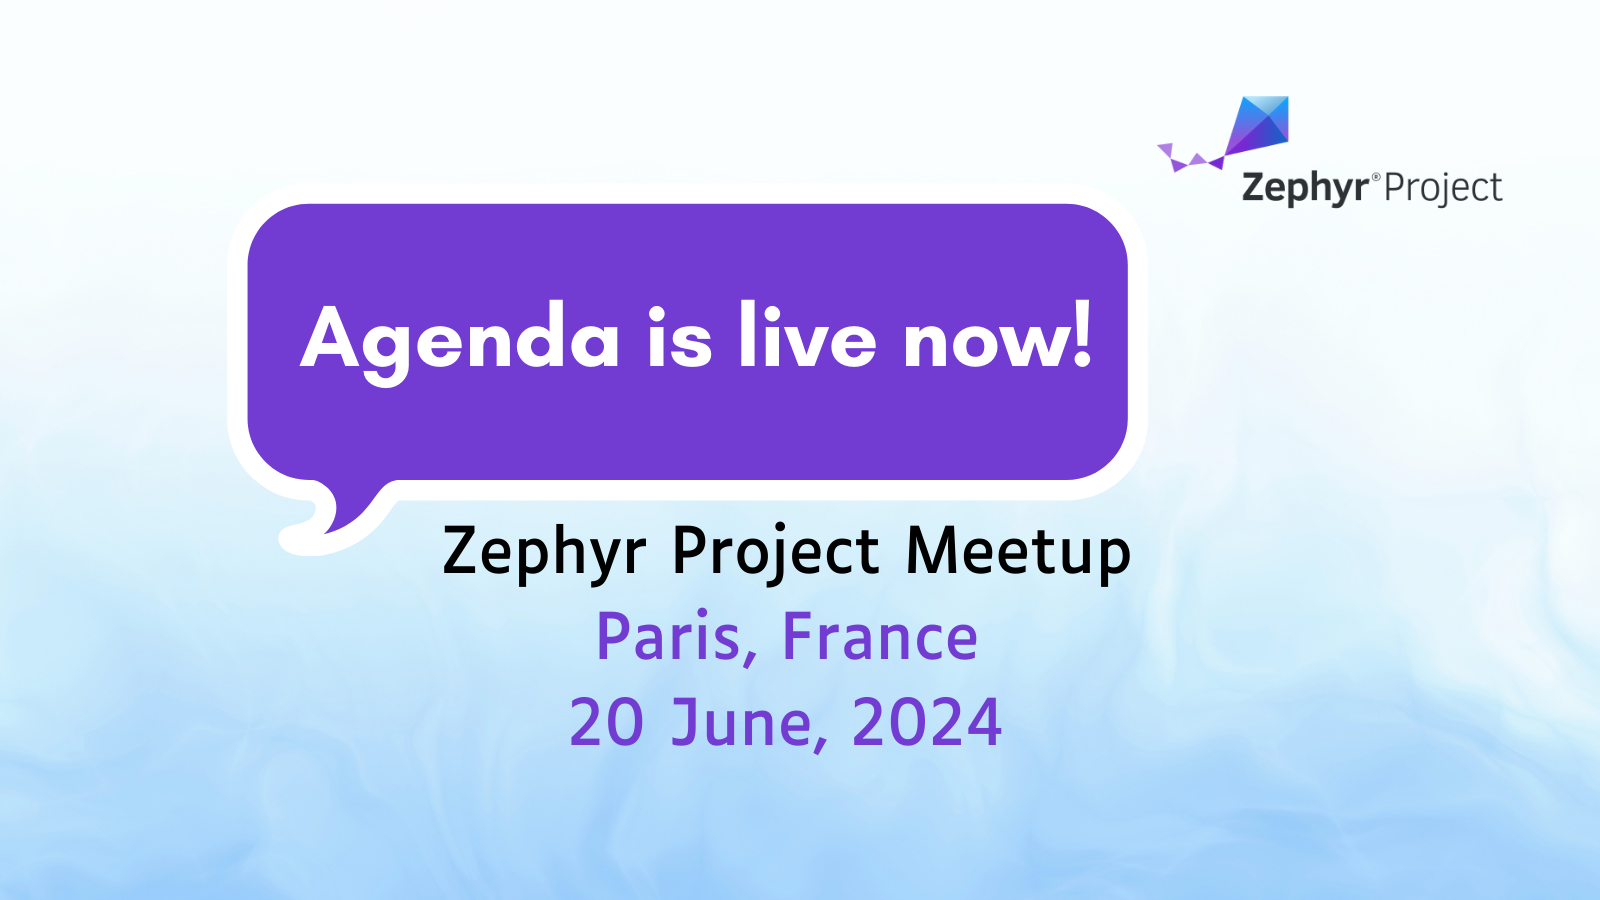 Zephyr project meetup, Paris, France at Ac6